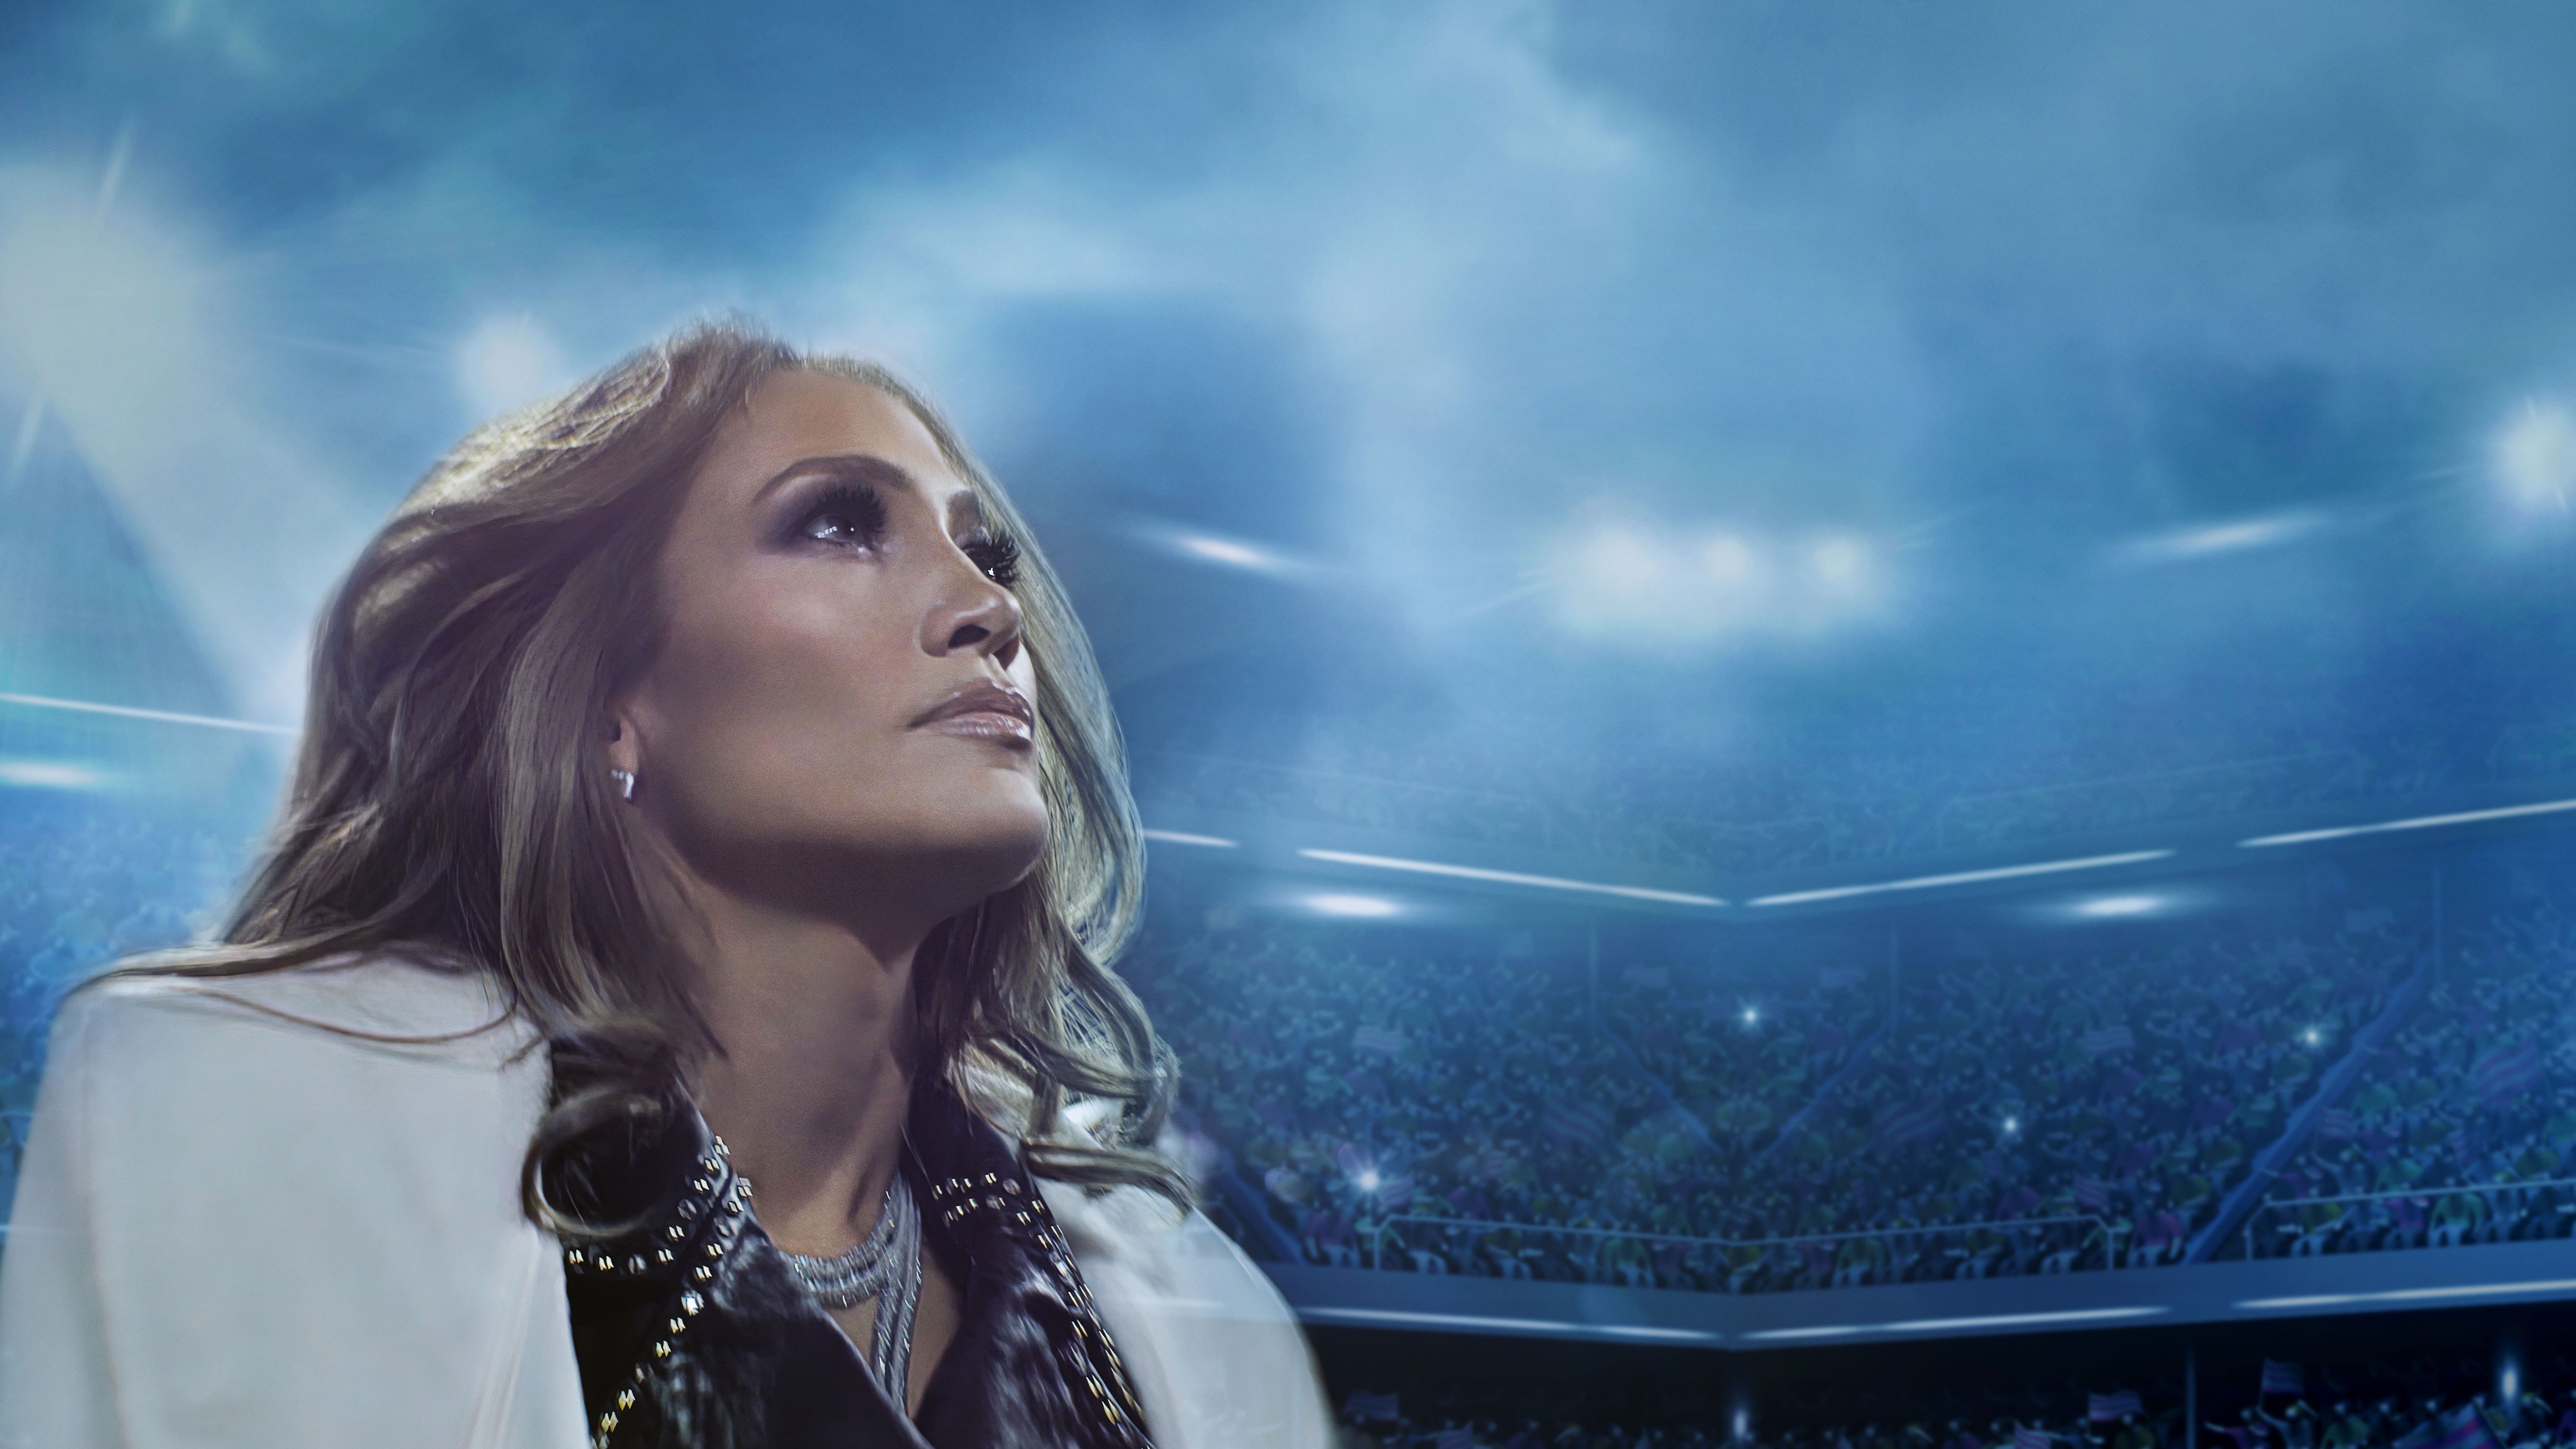 Jennifer Lopez Documentary ‘Halftime’ on Netflix Next TV